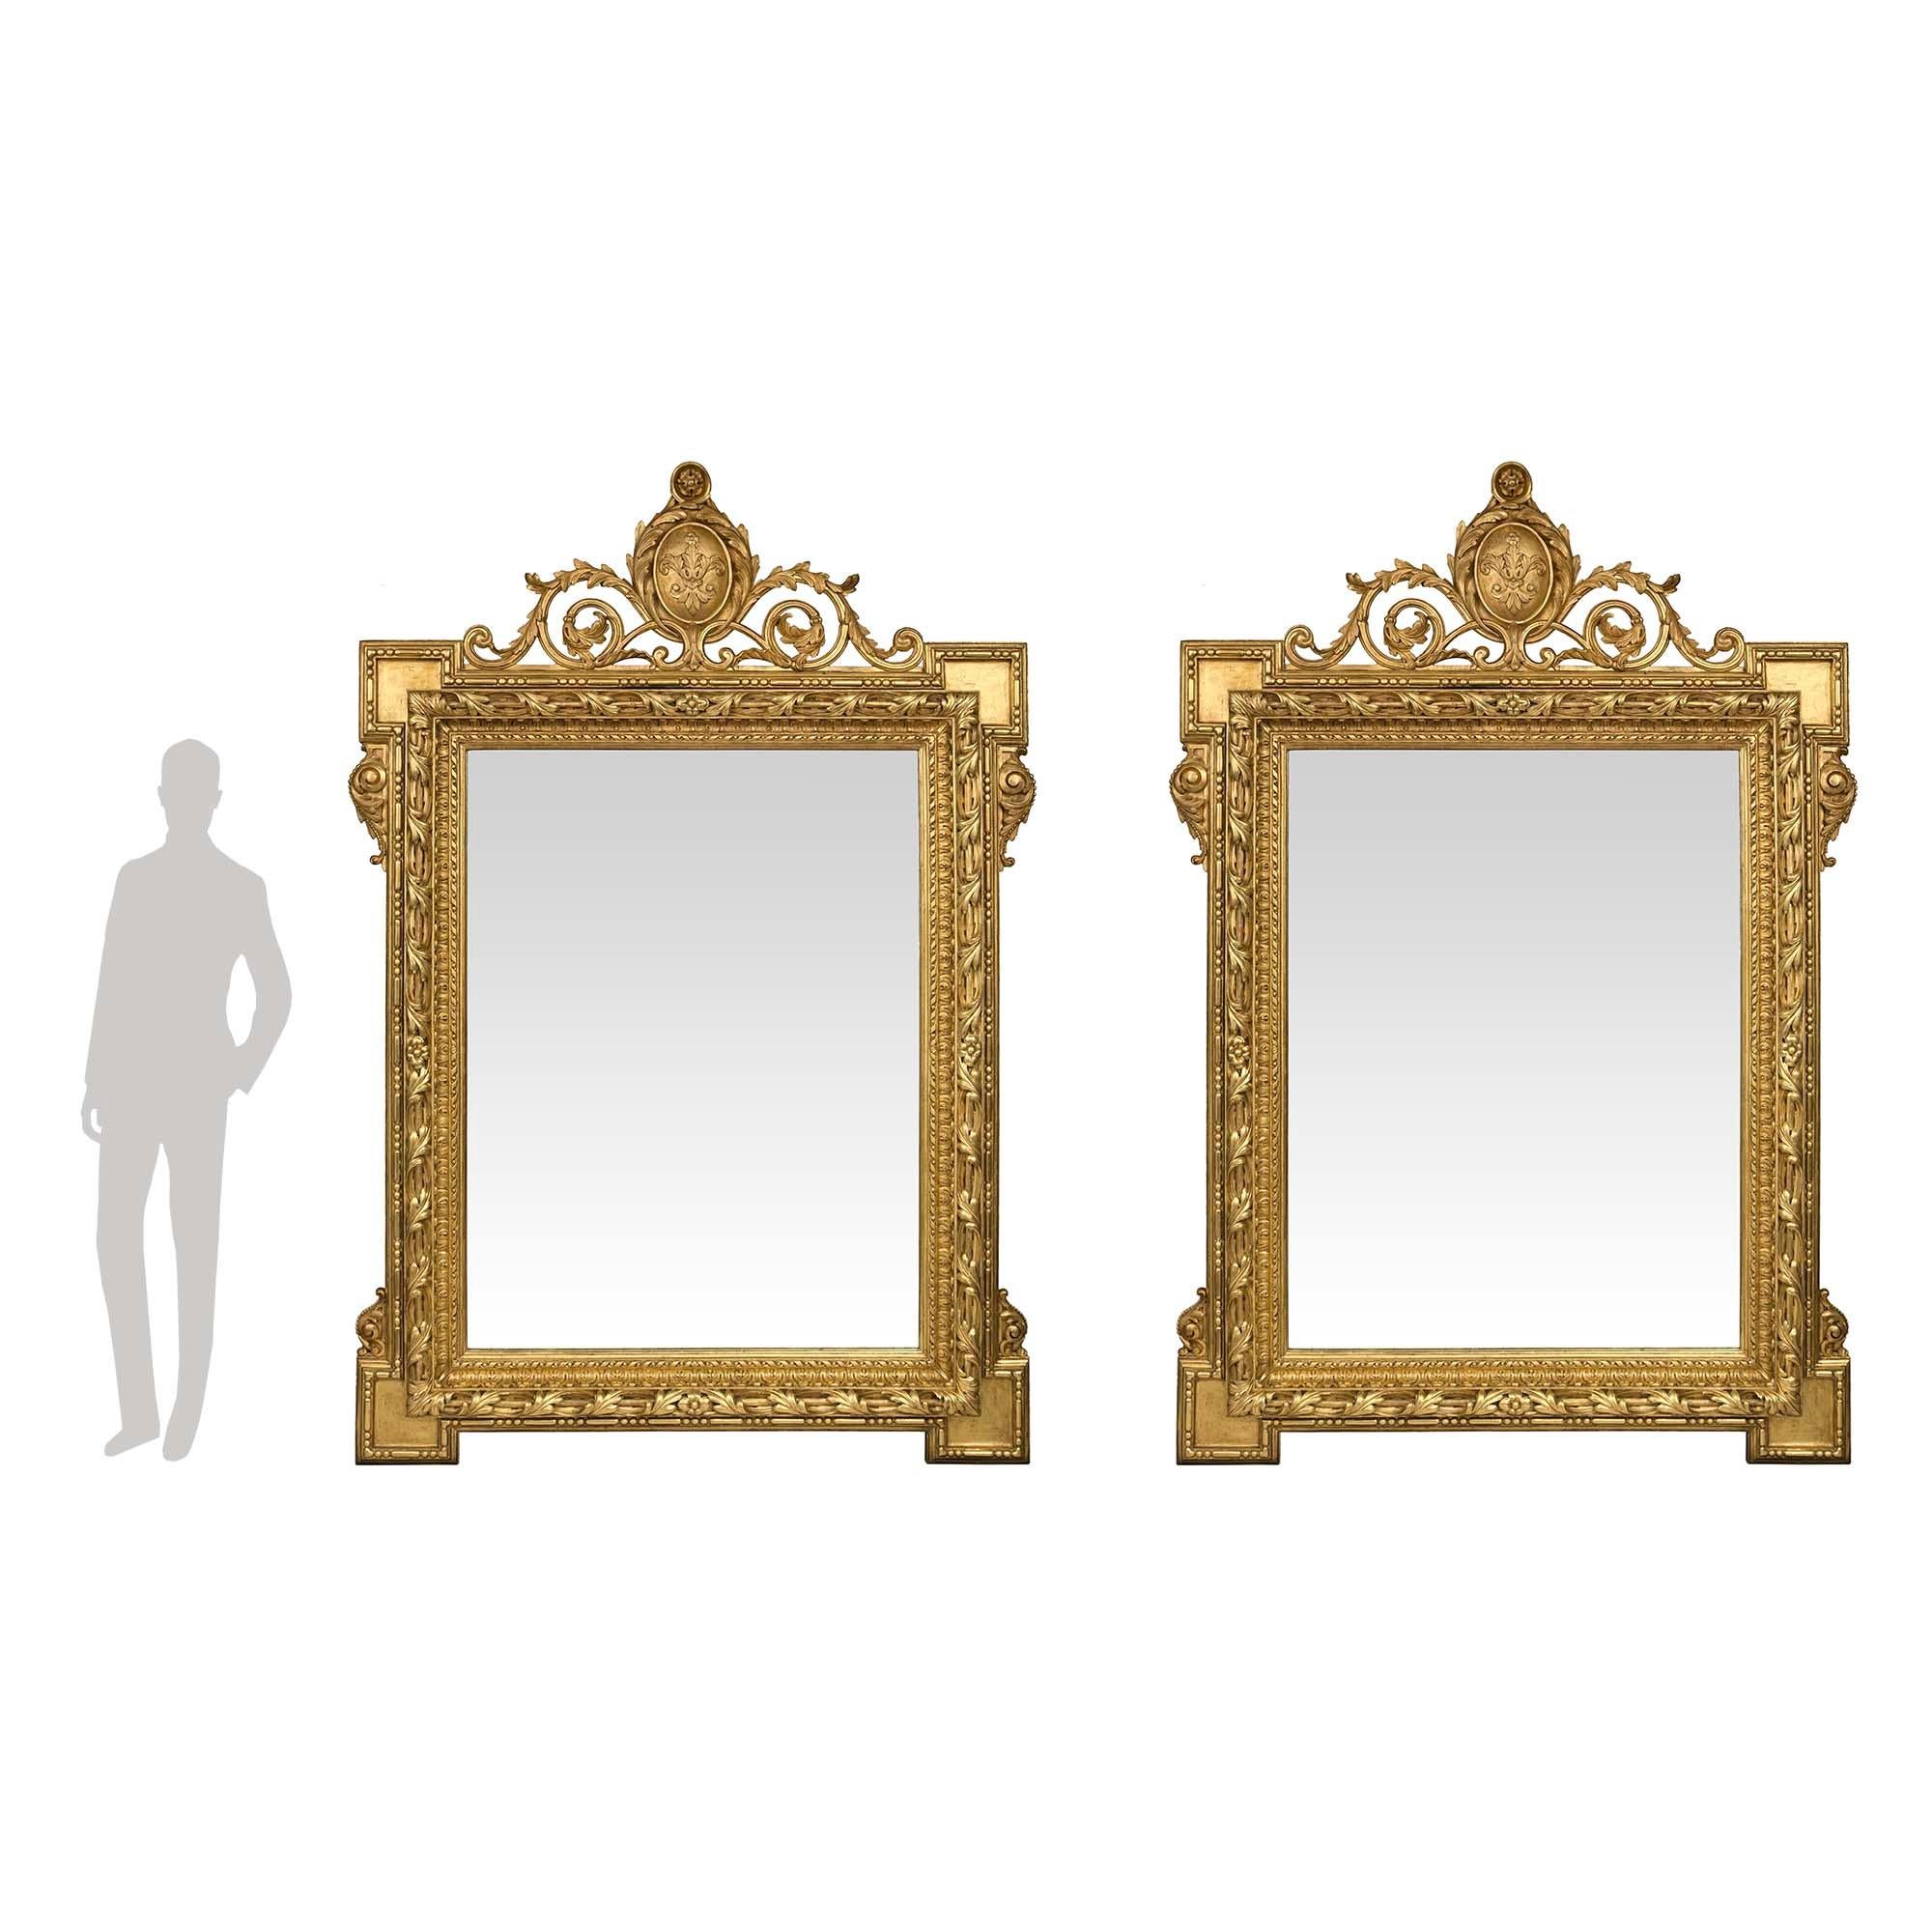 Une paire spectaculaire et monumentale de miroirs en bois doré de style Louis XVI du XIXe siècle. Chaque plaque de miroir originale est encadrée d'un remarquable motif torsadé et perlé richement sculpté. Le cadre épais et remarquable présente des